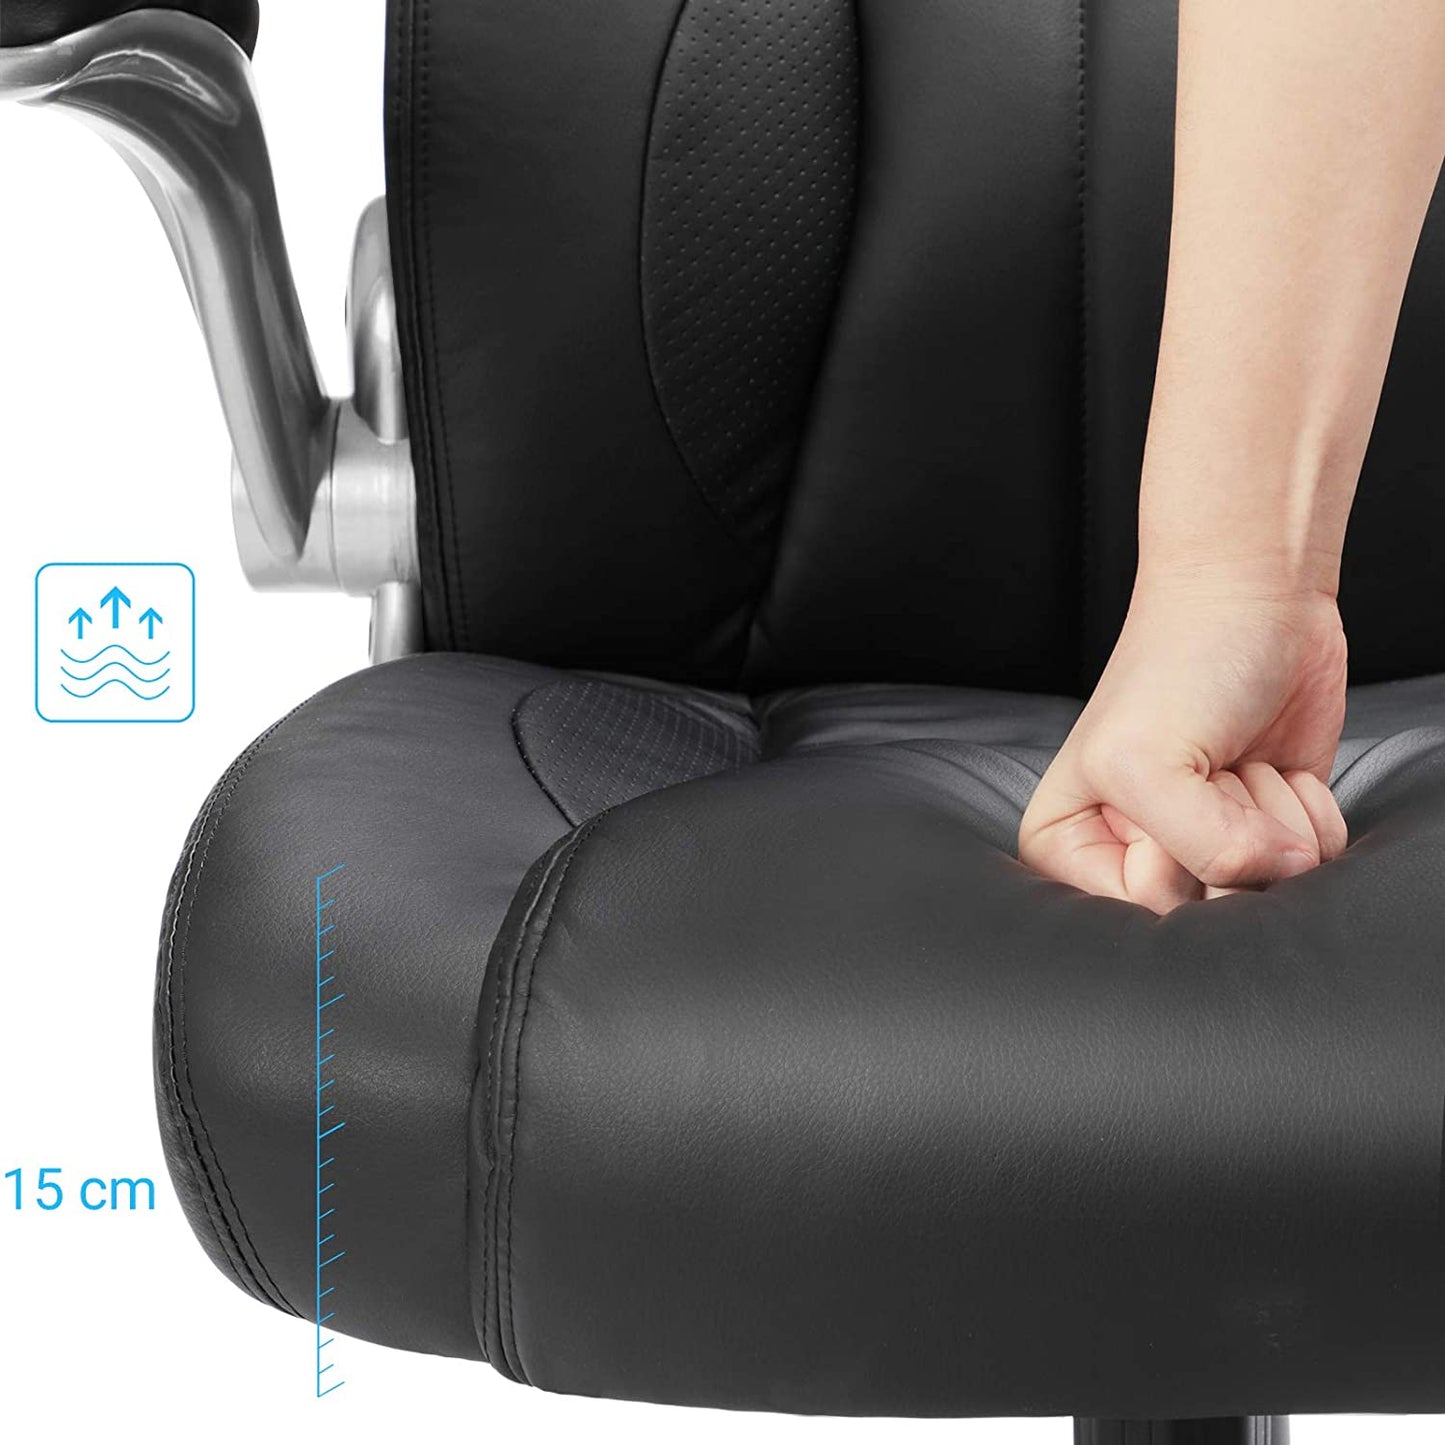 Chaise de bureau Nancy's Fordham - Chaise pivotante ergonomique - Chaises de bureau